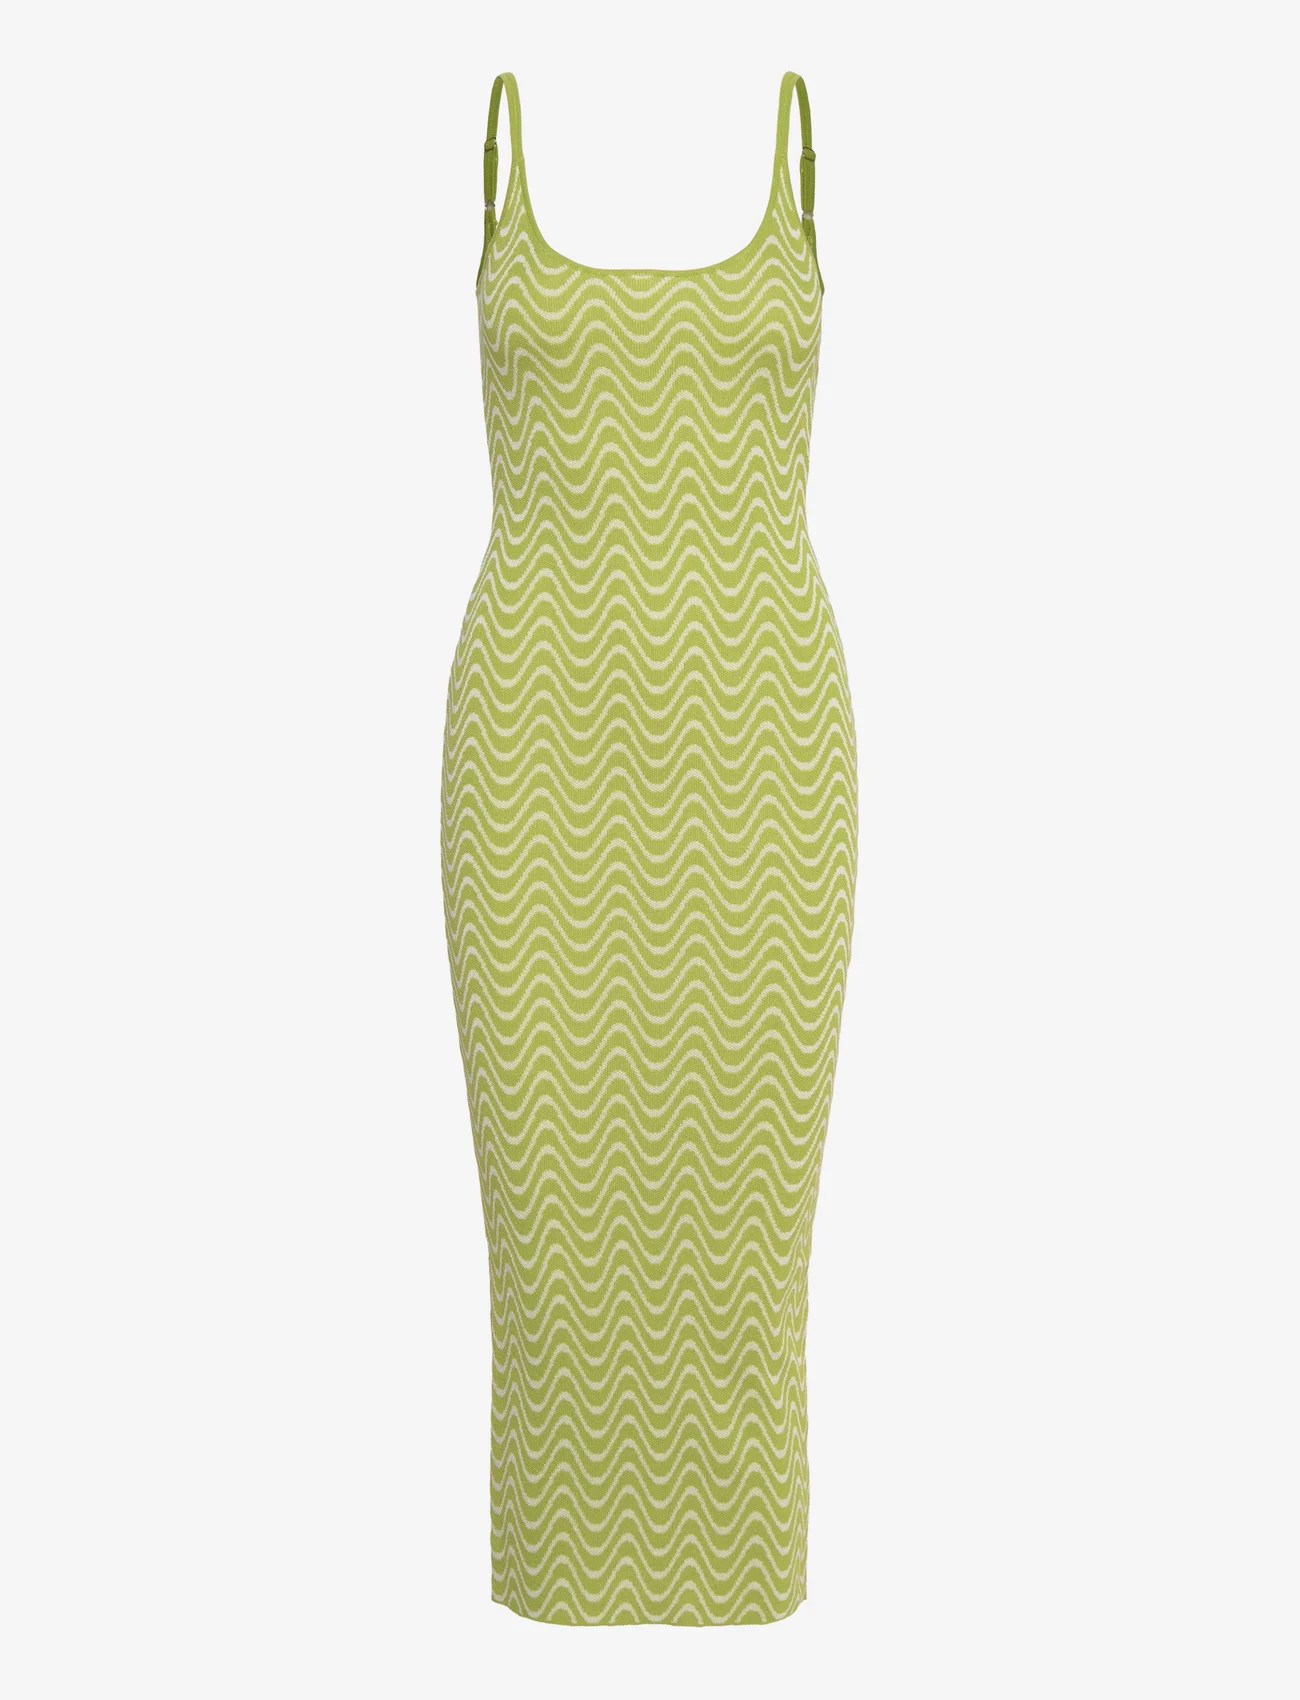 Envii - ENPERIDOT SL DRESS 6911 - tettsittende kjoler - wave pool - 0